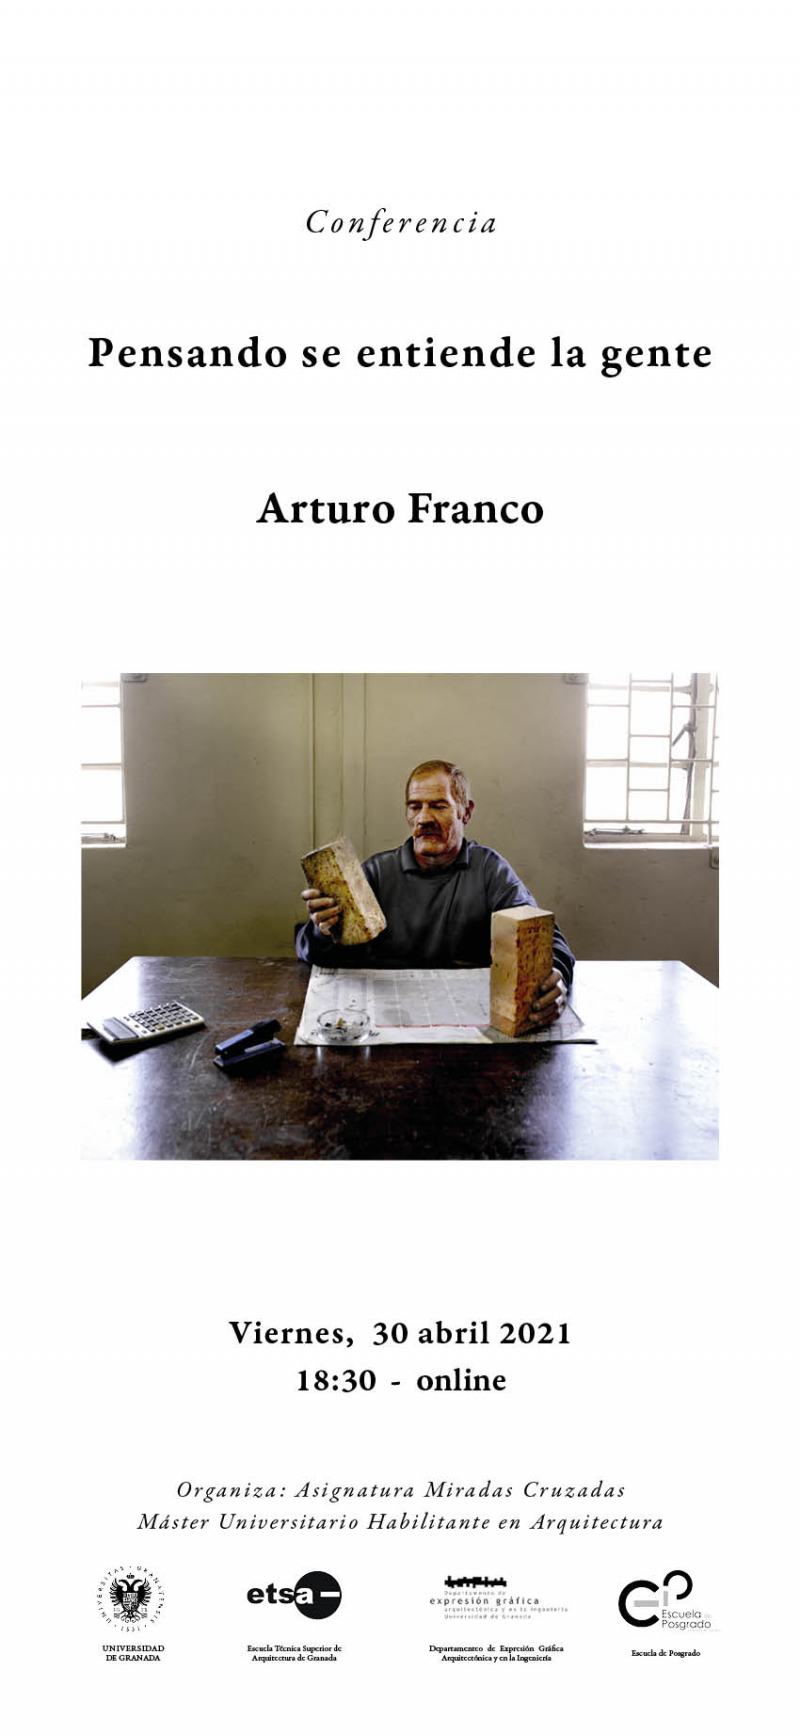 Cartel de la conferencia Pensando se entiende la gente, con una imagen de Arturo Franco en una mesa con dos ladrillos en sus manos